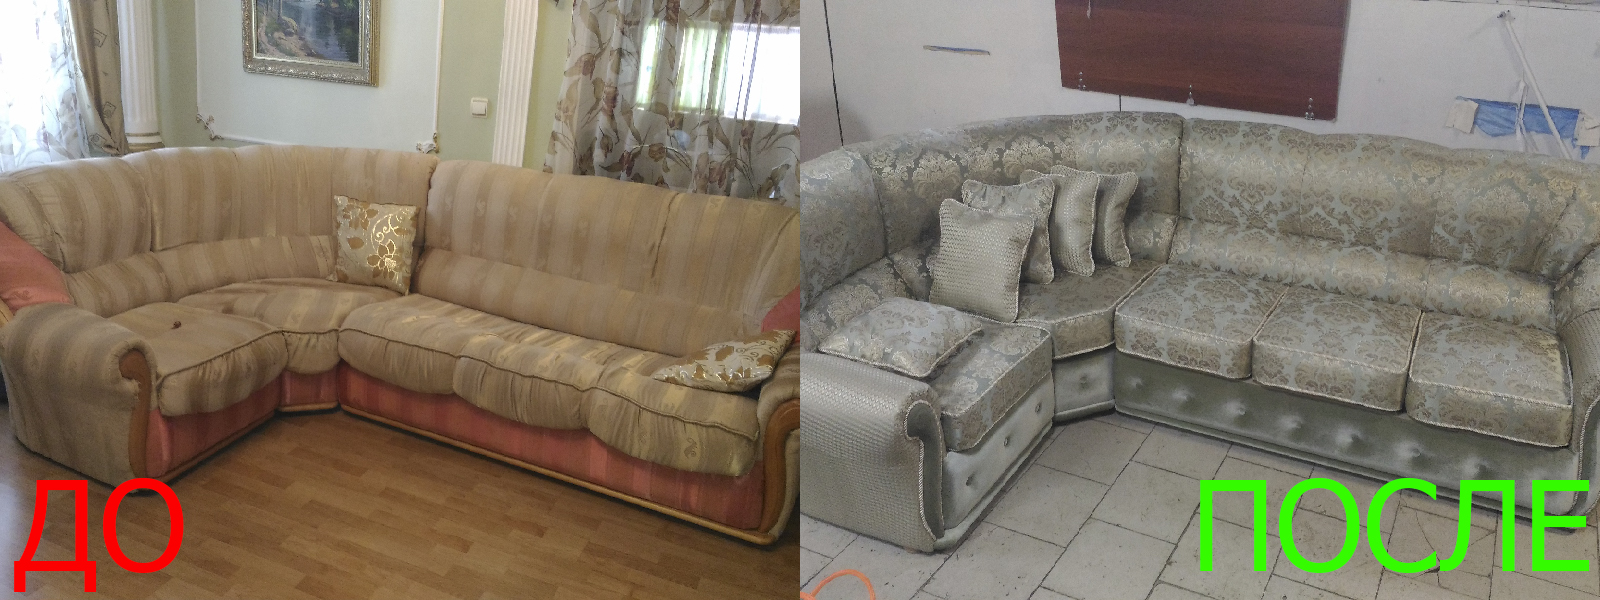 Обшивка мебели на дому в Евпатории по адекватной цене, качественно, с гарантией 100%